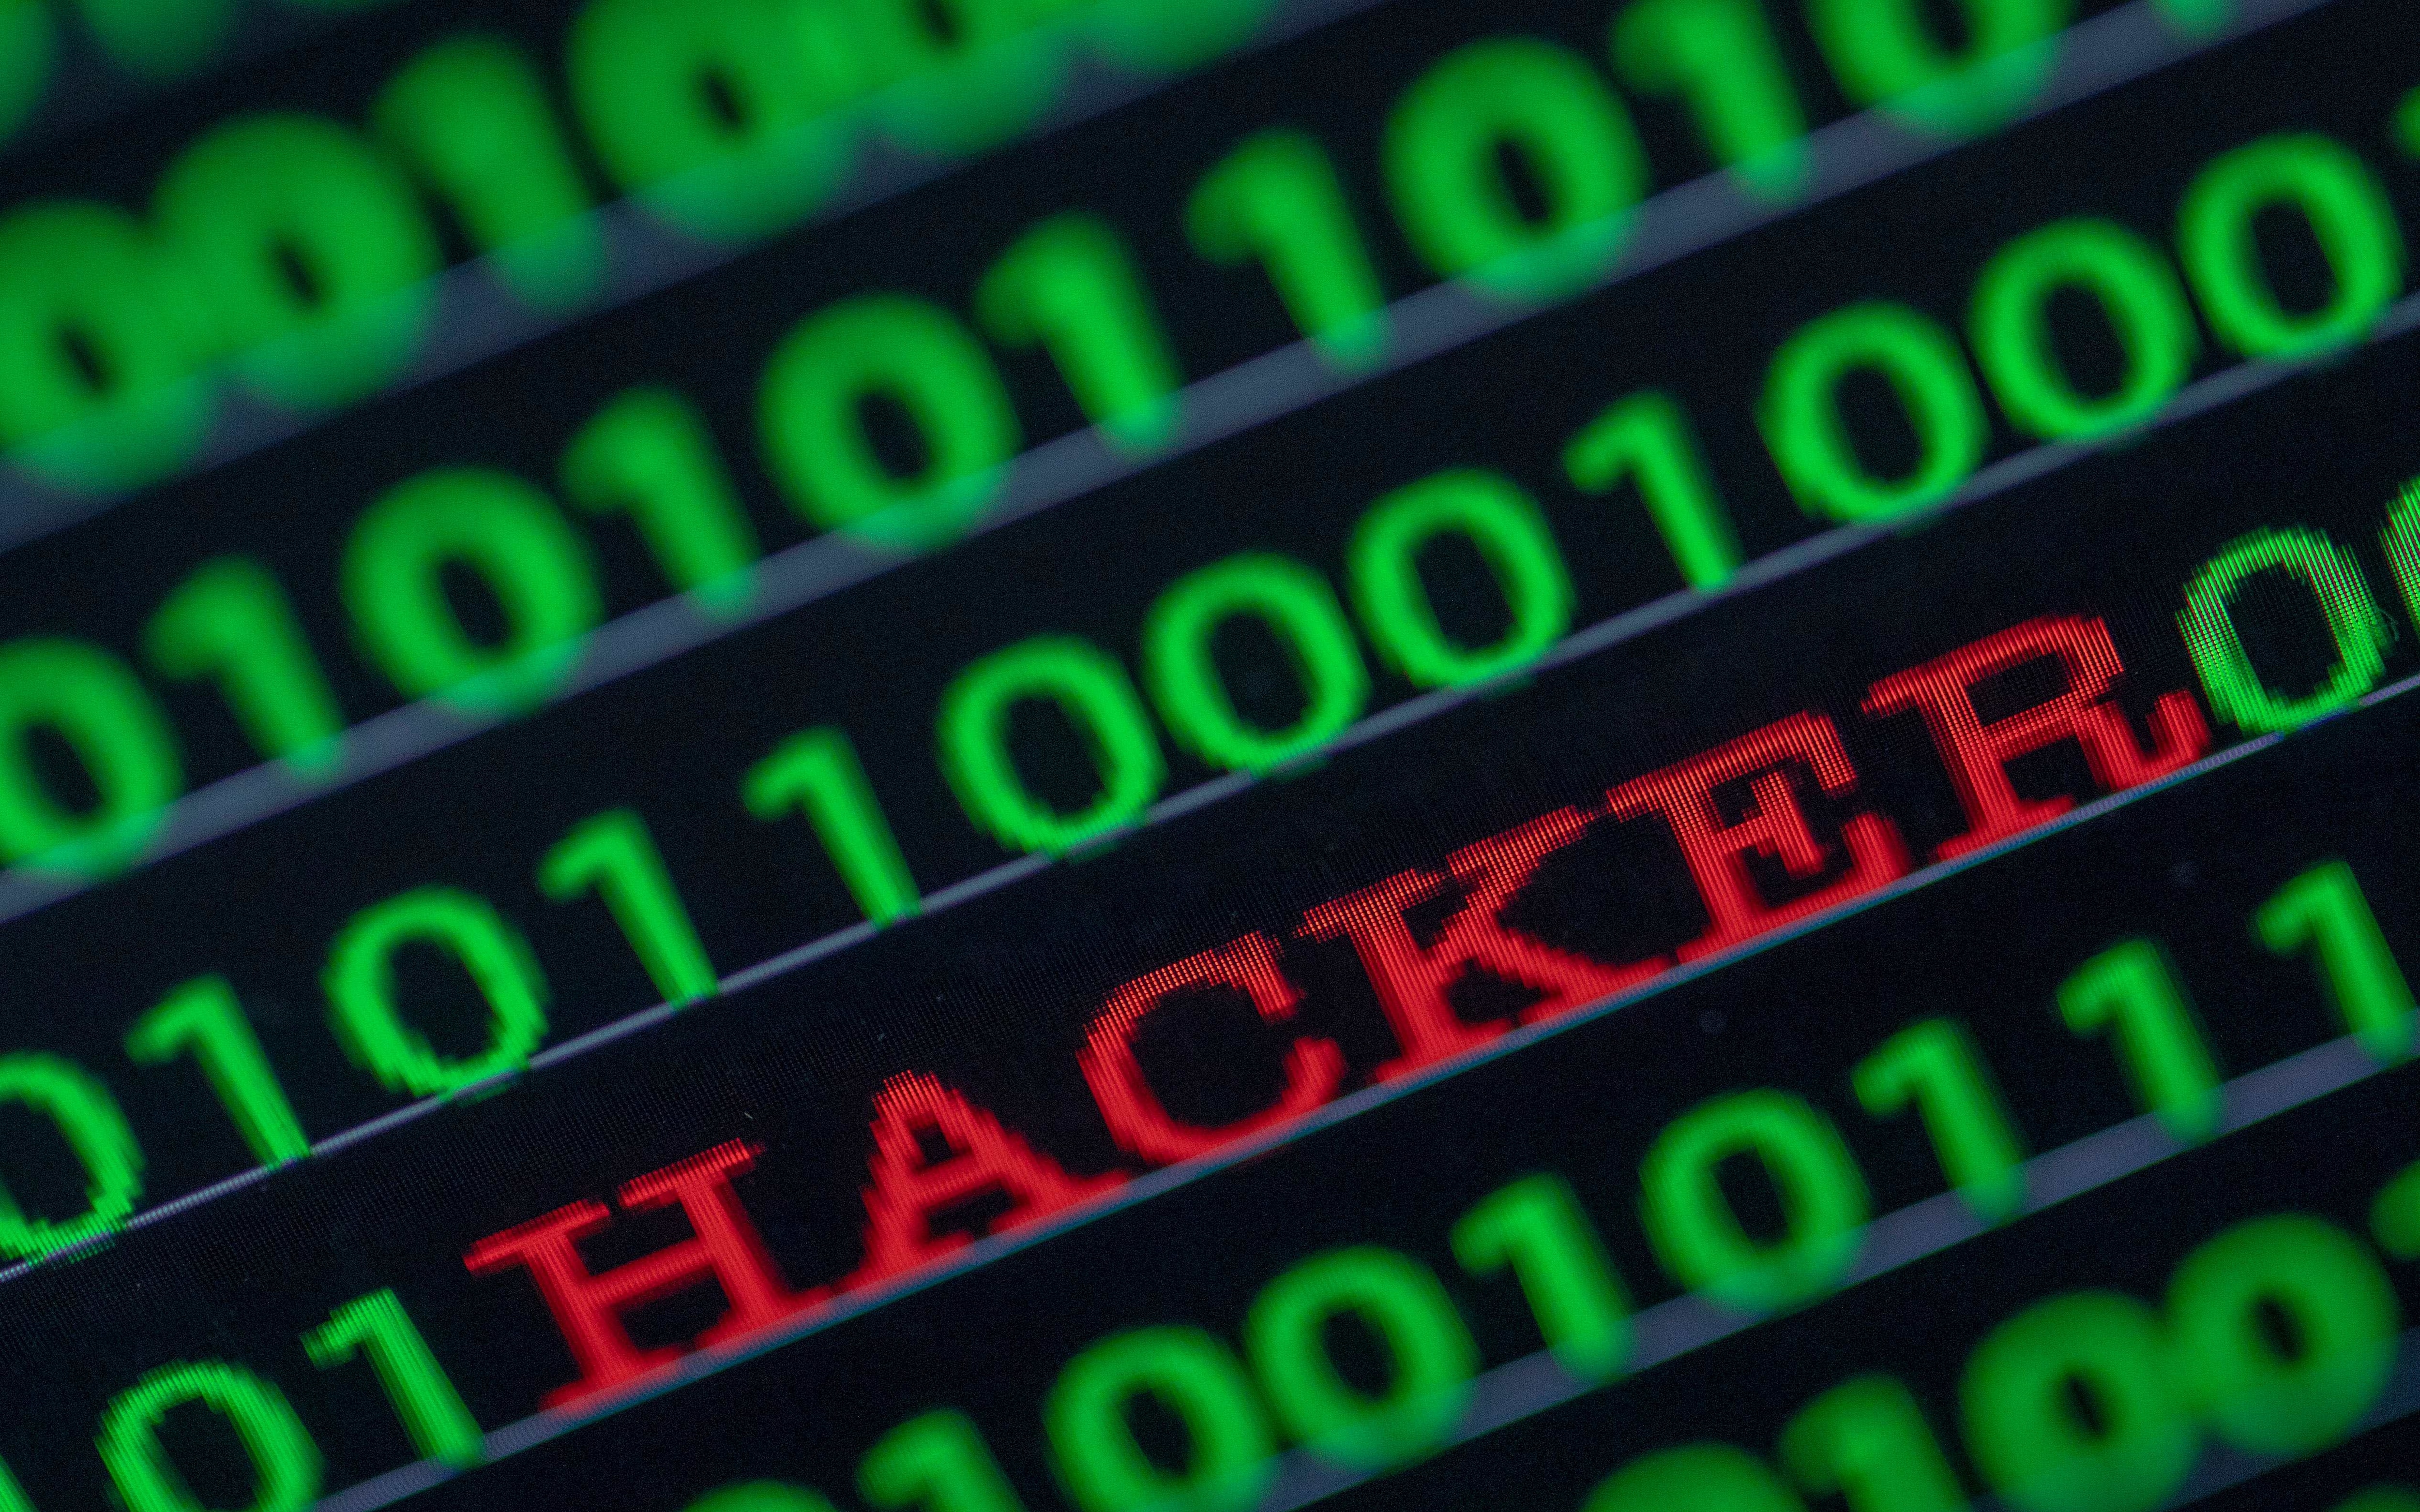 Mediaworld, computer systems under hacker attack